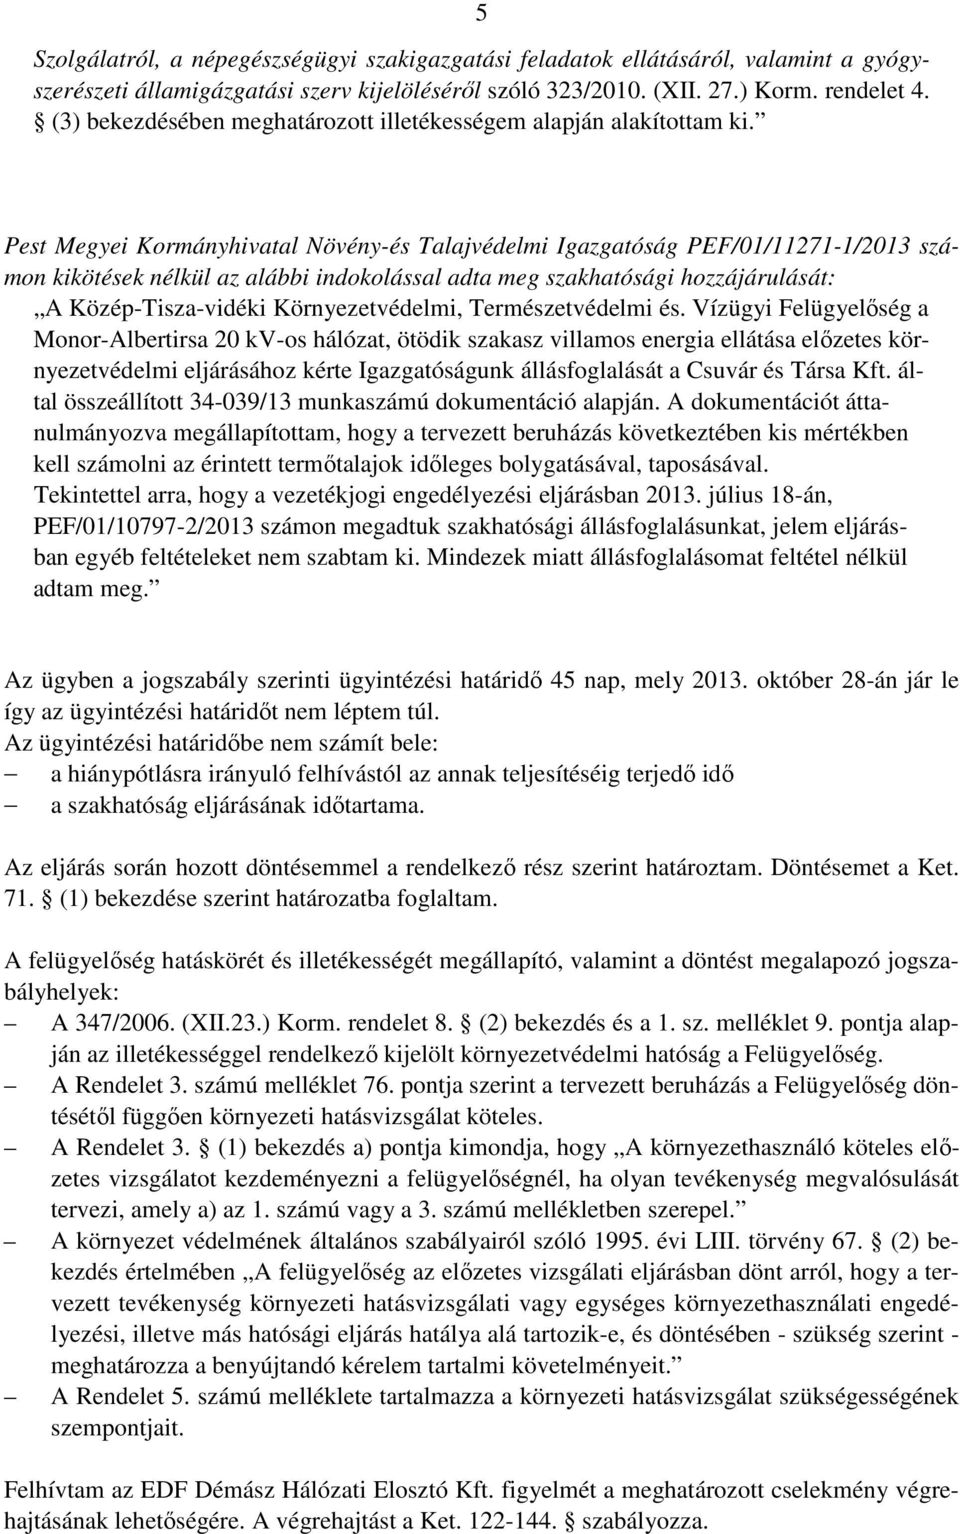 Pest Megyei Kormányhivatal Növény-és Talajvédelmi Igazgatóság PEF/01/11271-1/2013 számon kikötések nélkül az alábbi indokolással adta meg szakhatósági hozzájárulását: A Közép-Tisza-vidéki